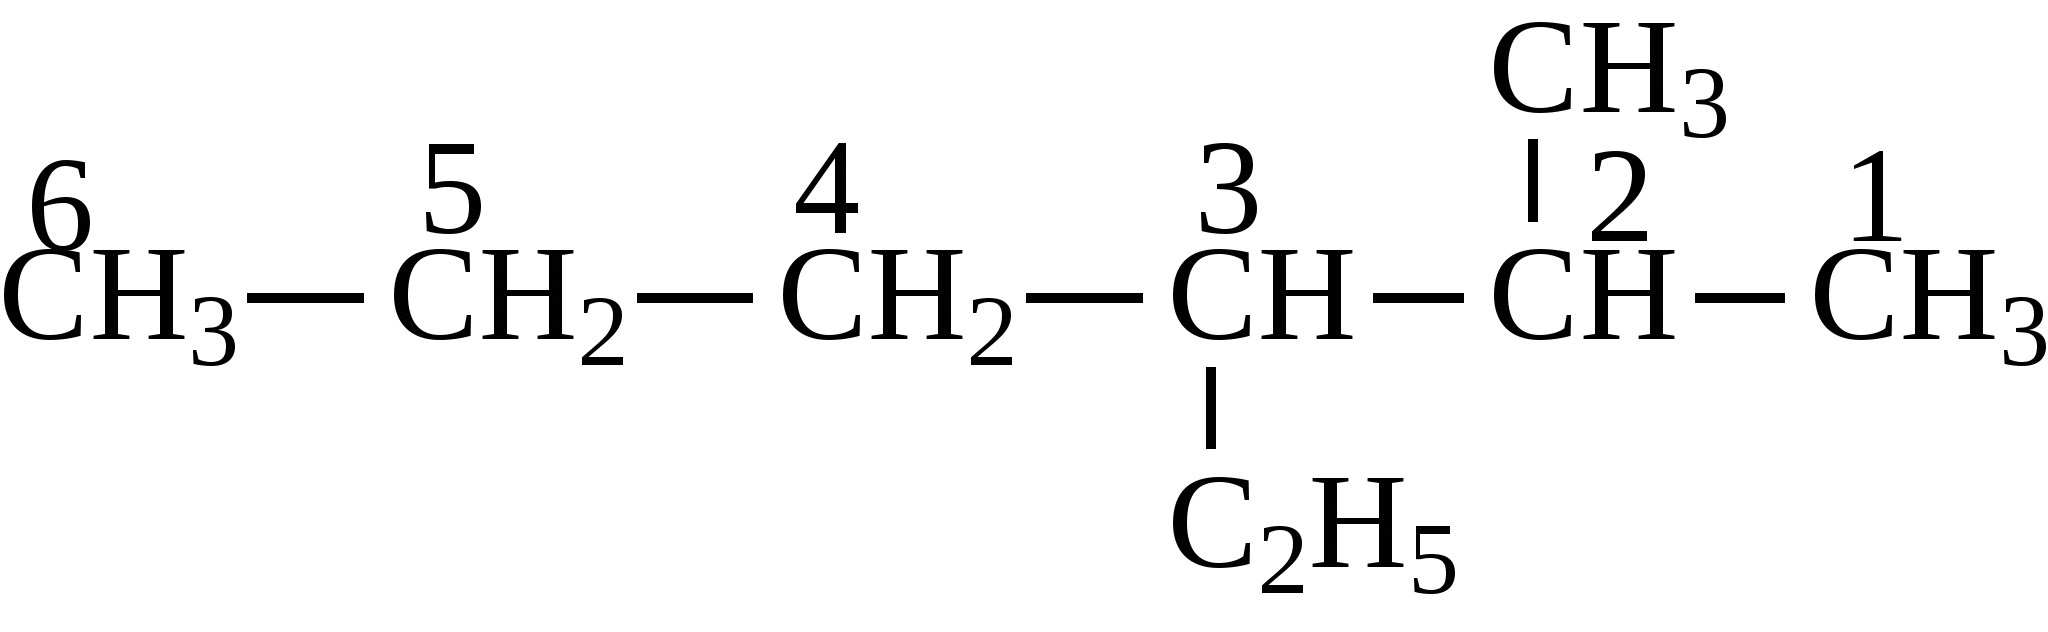 Метил этил гексан. 2 Метил 3 этилгексан формула. 2 Метил 3 этилгексан структурная формула. 2 Метил 3 этил гексан структурная формула. 2 Метил 2 этилгексан.